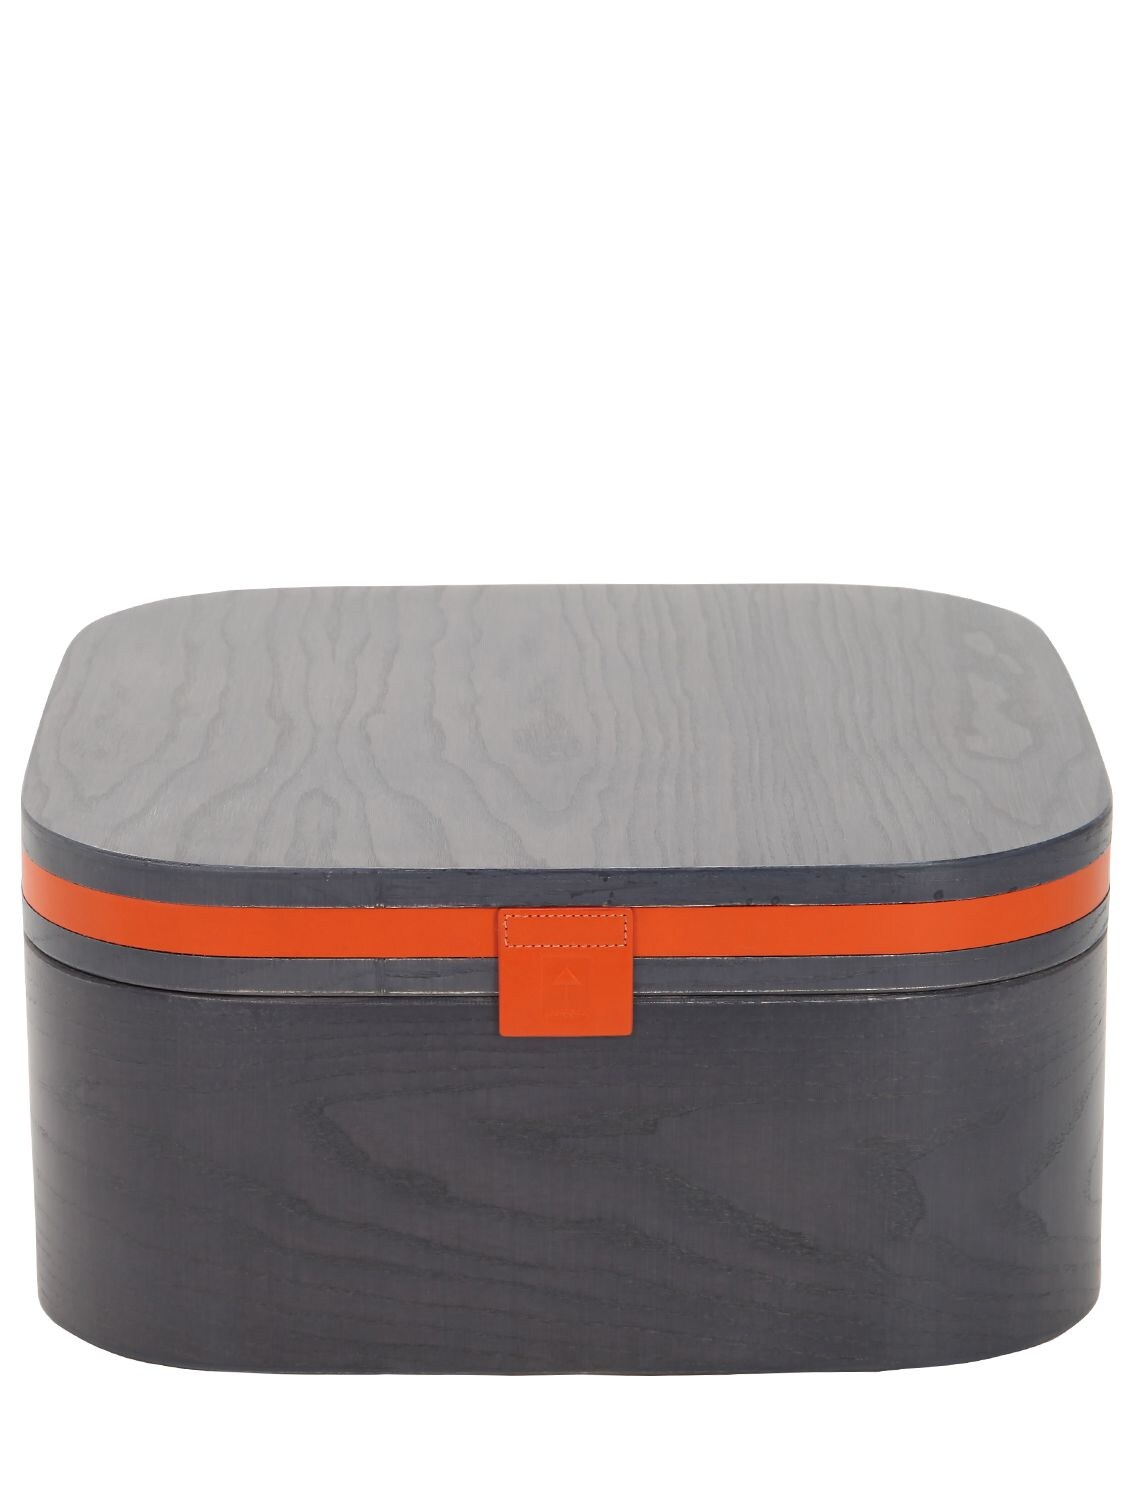 Armani/casa Goccia Square Leather & Wood Container In Grey,orange